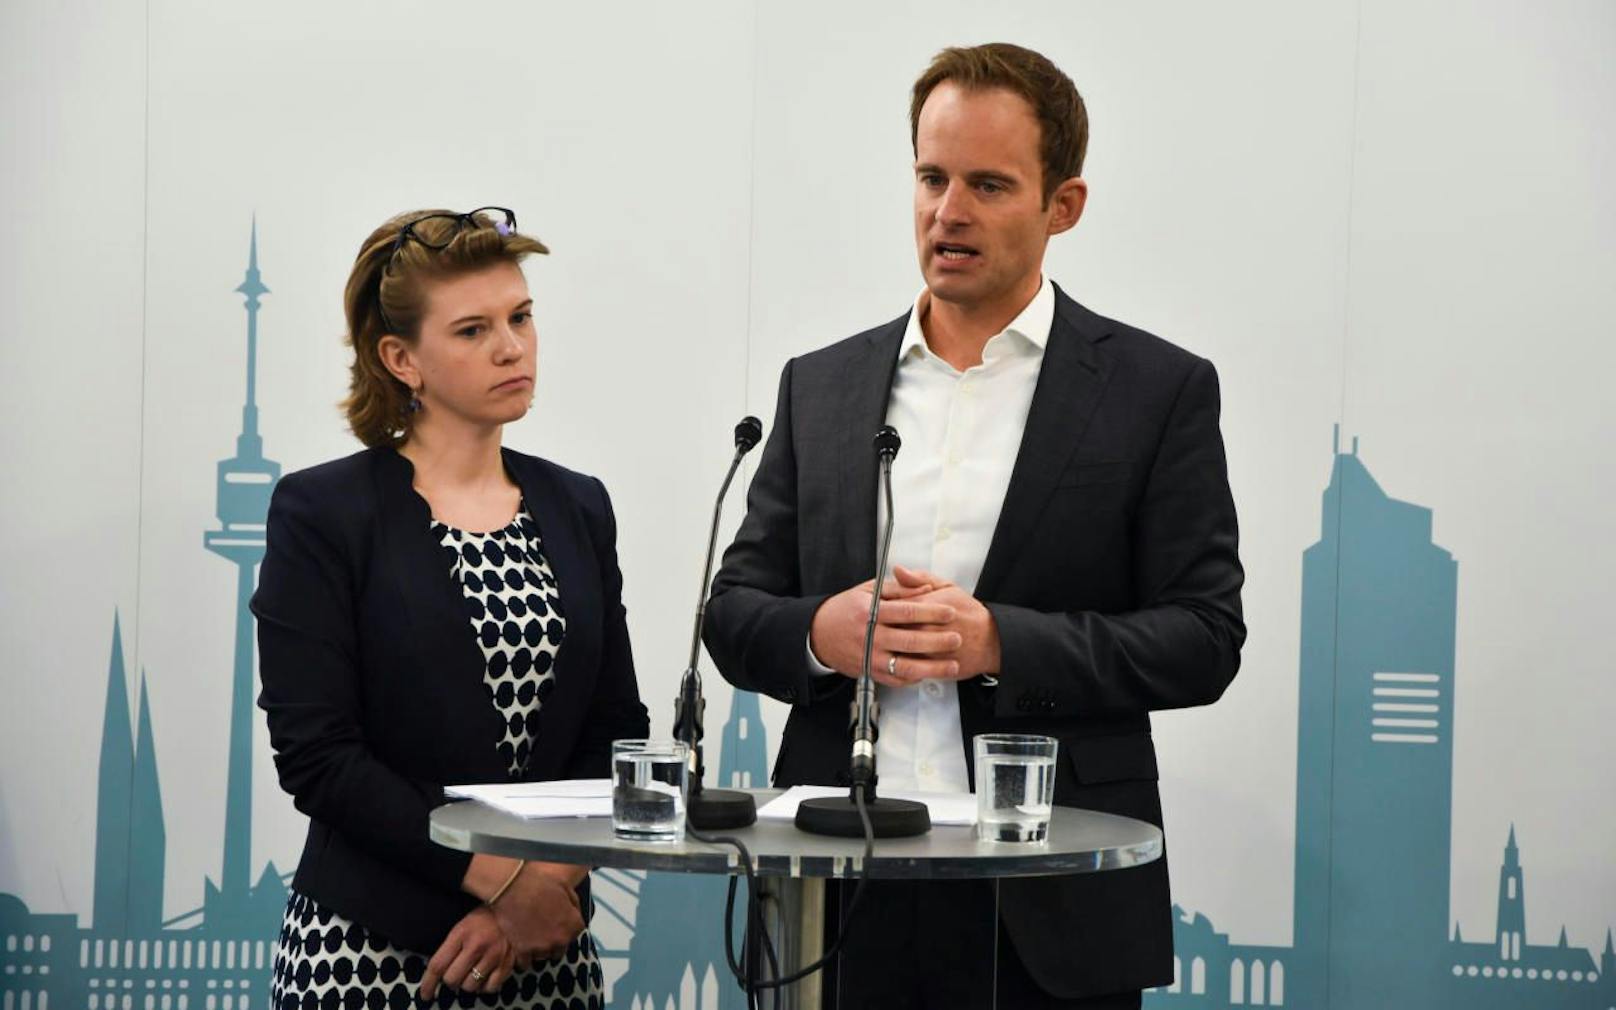 Die ÖVP Wien (v.l.: Klubobfrau Elisabeth Olischar und Stadtrat Markus Wölbitsch) will Wiens Weltkulturerbe über eine Änderung der Flächenwidmung beim Heumarkt retten. (c) ÖVP Wien